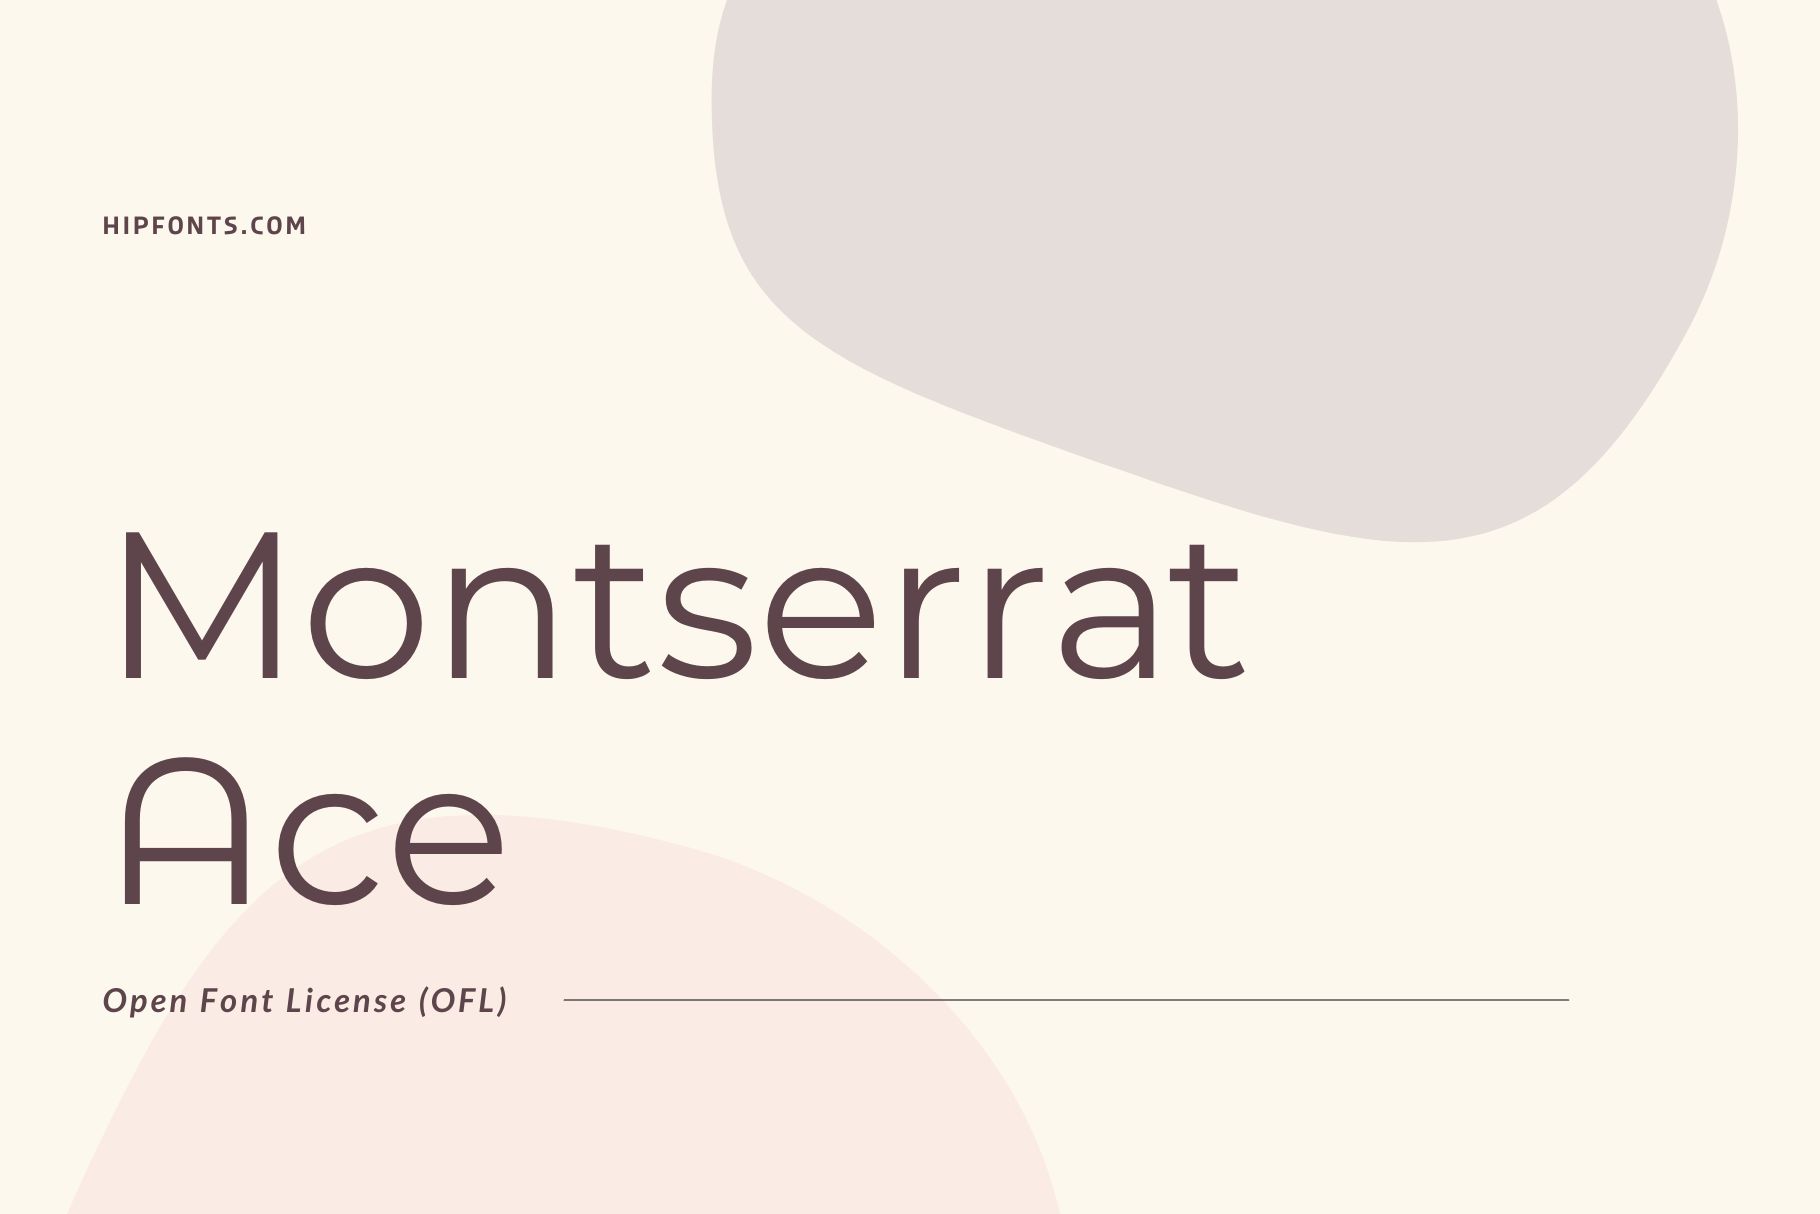 Montserrat Ace free font